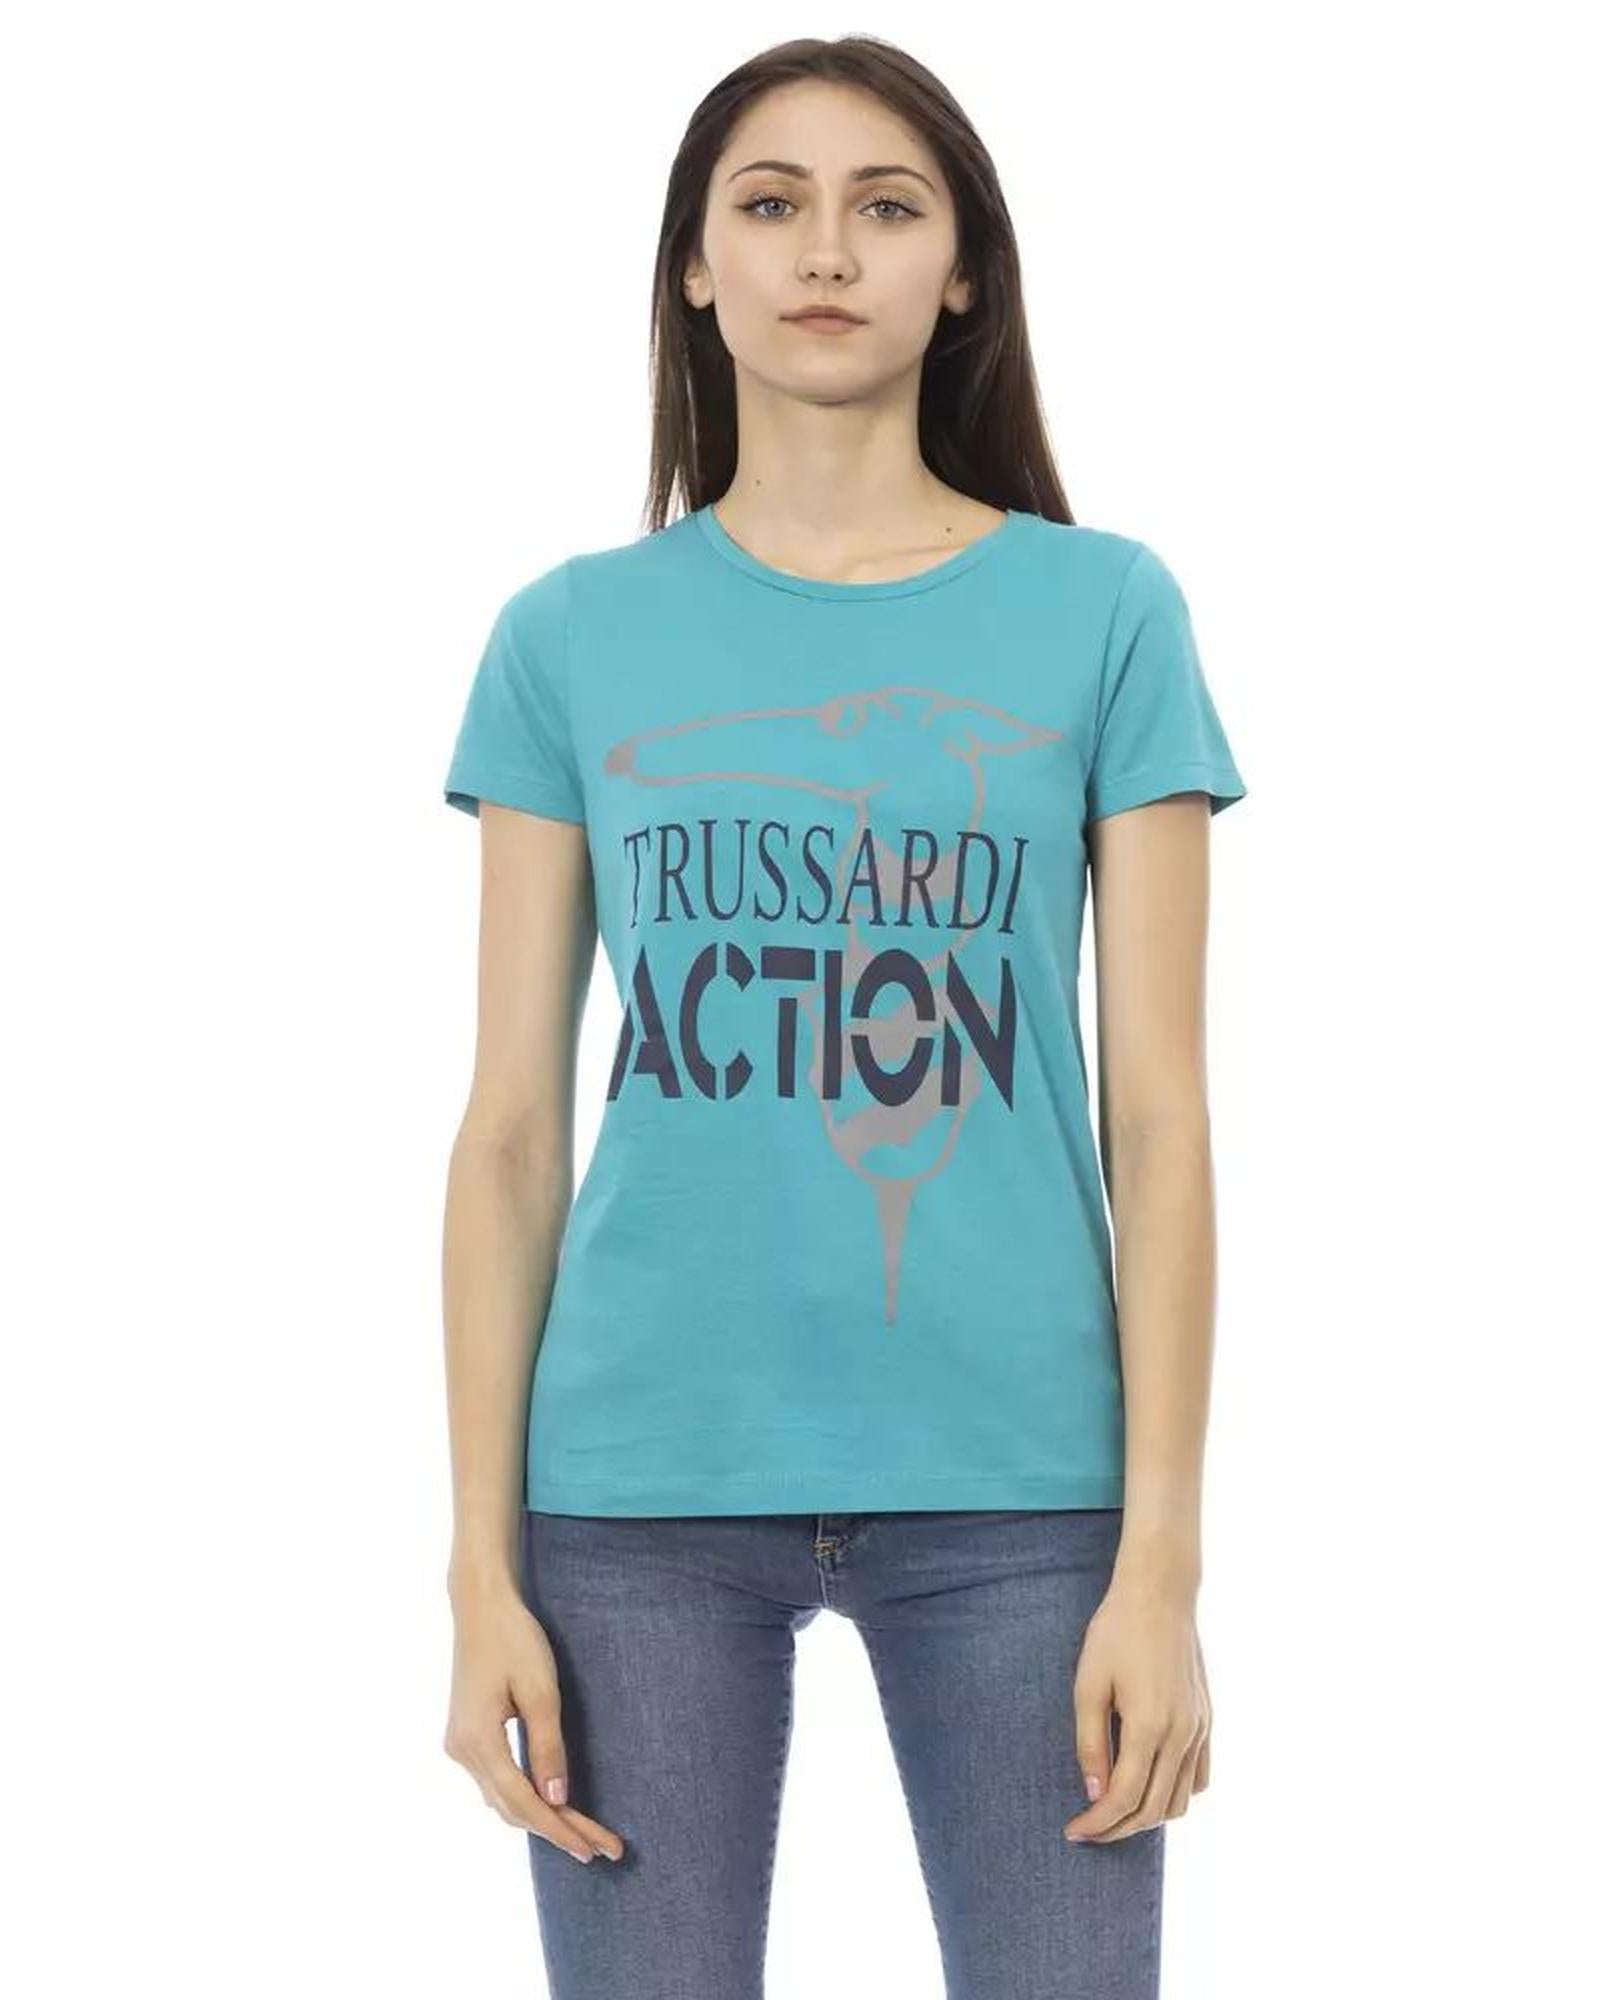 Women's Light Blue Cotton Tops & T-Shirt - M